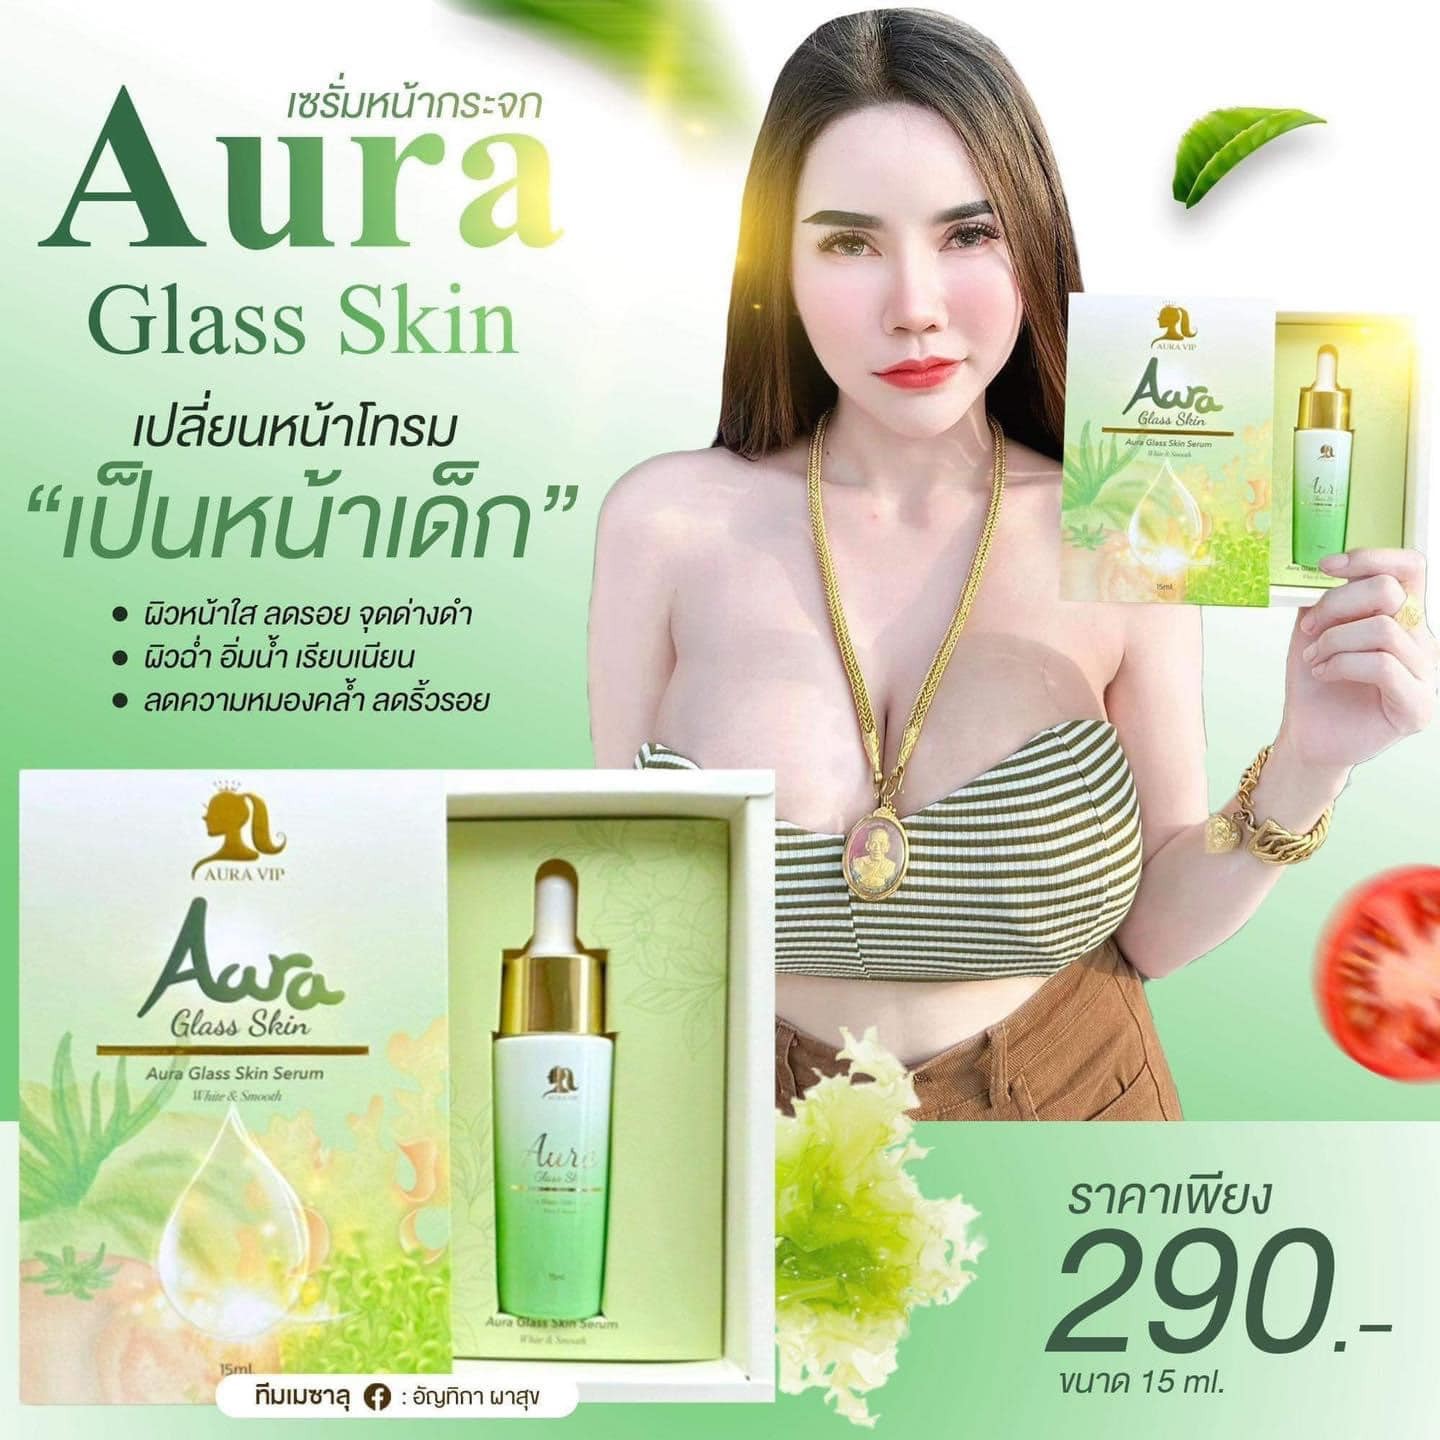 รูปภาพที่1 ของสินค้า : AURA VIP AURA GLASS SKIN SERUM ออร่า วีไอพี ออร่า กลาส สกิน เซรั่ม ขนาด 15ml.